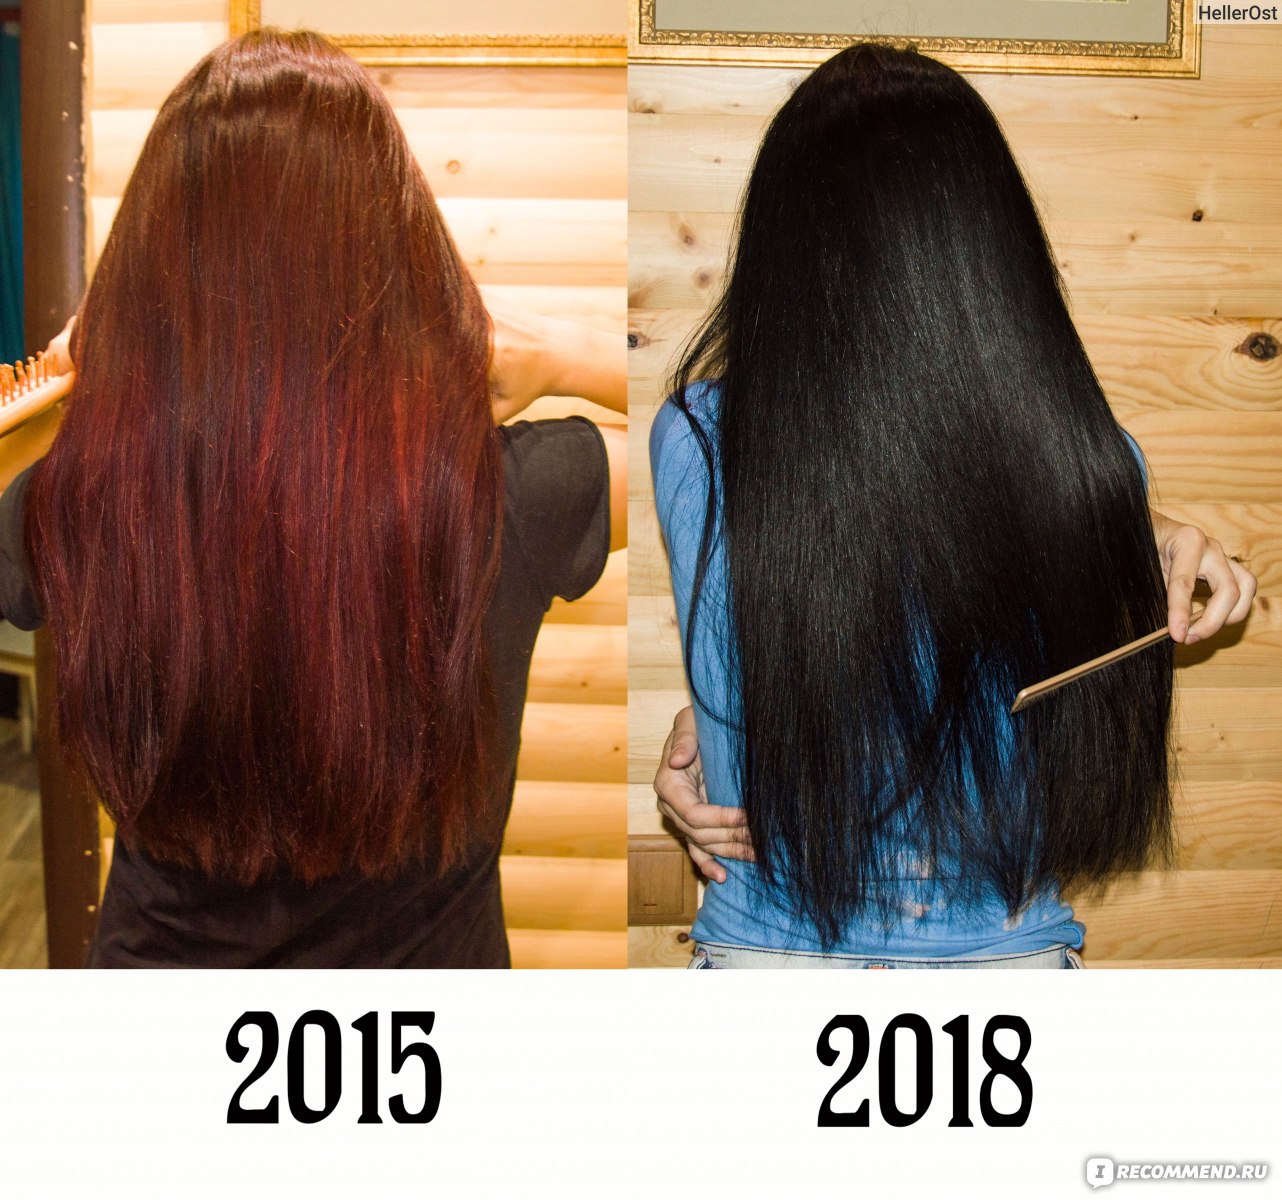 Хна и басма для волос фото до и после